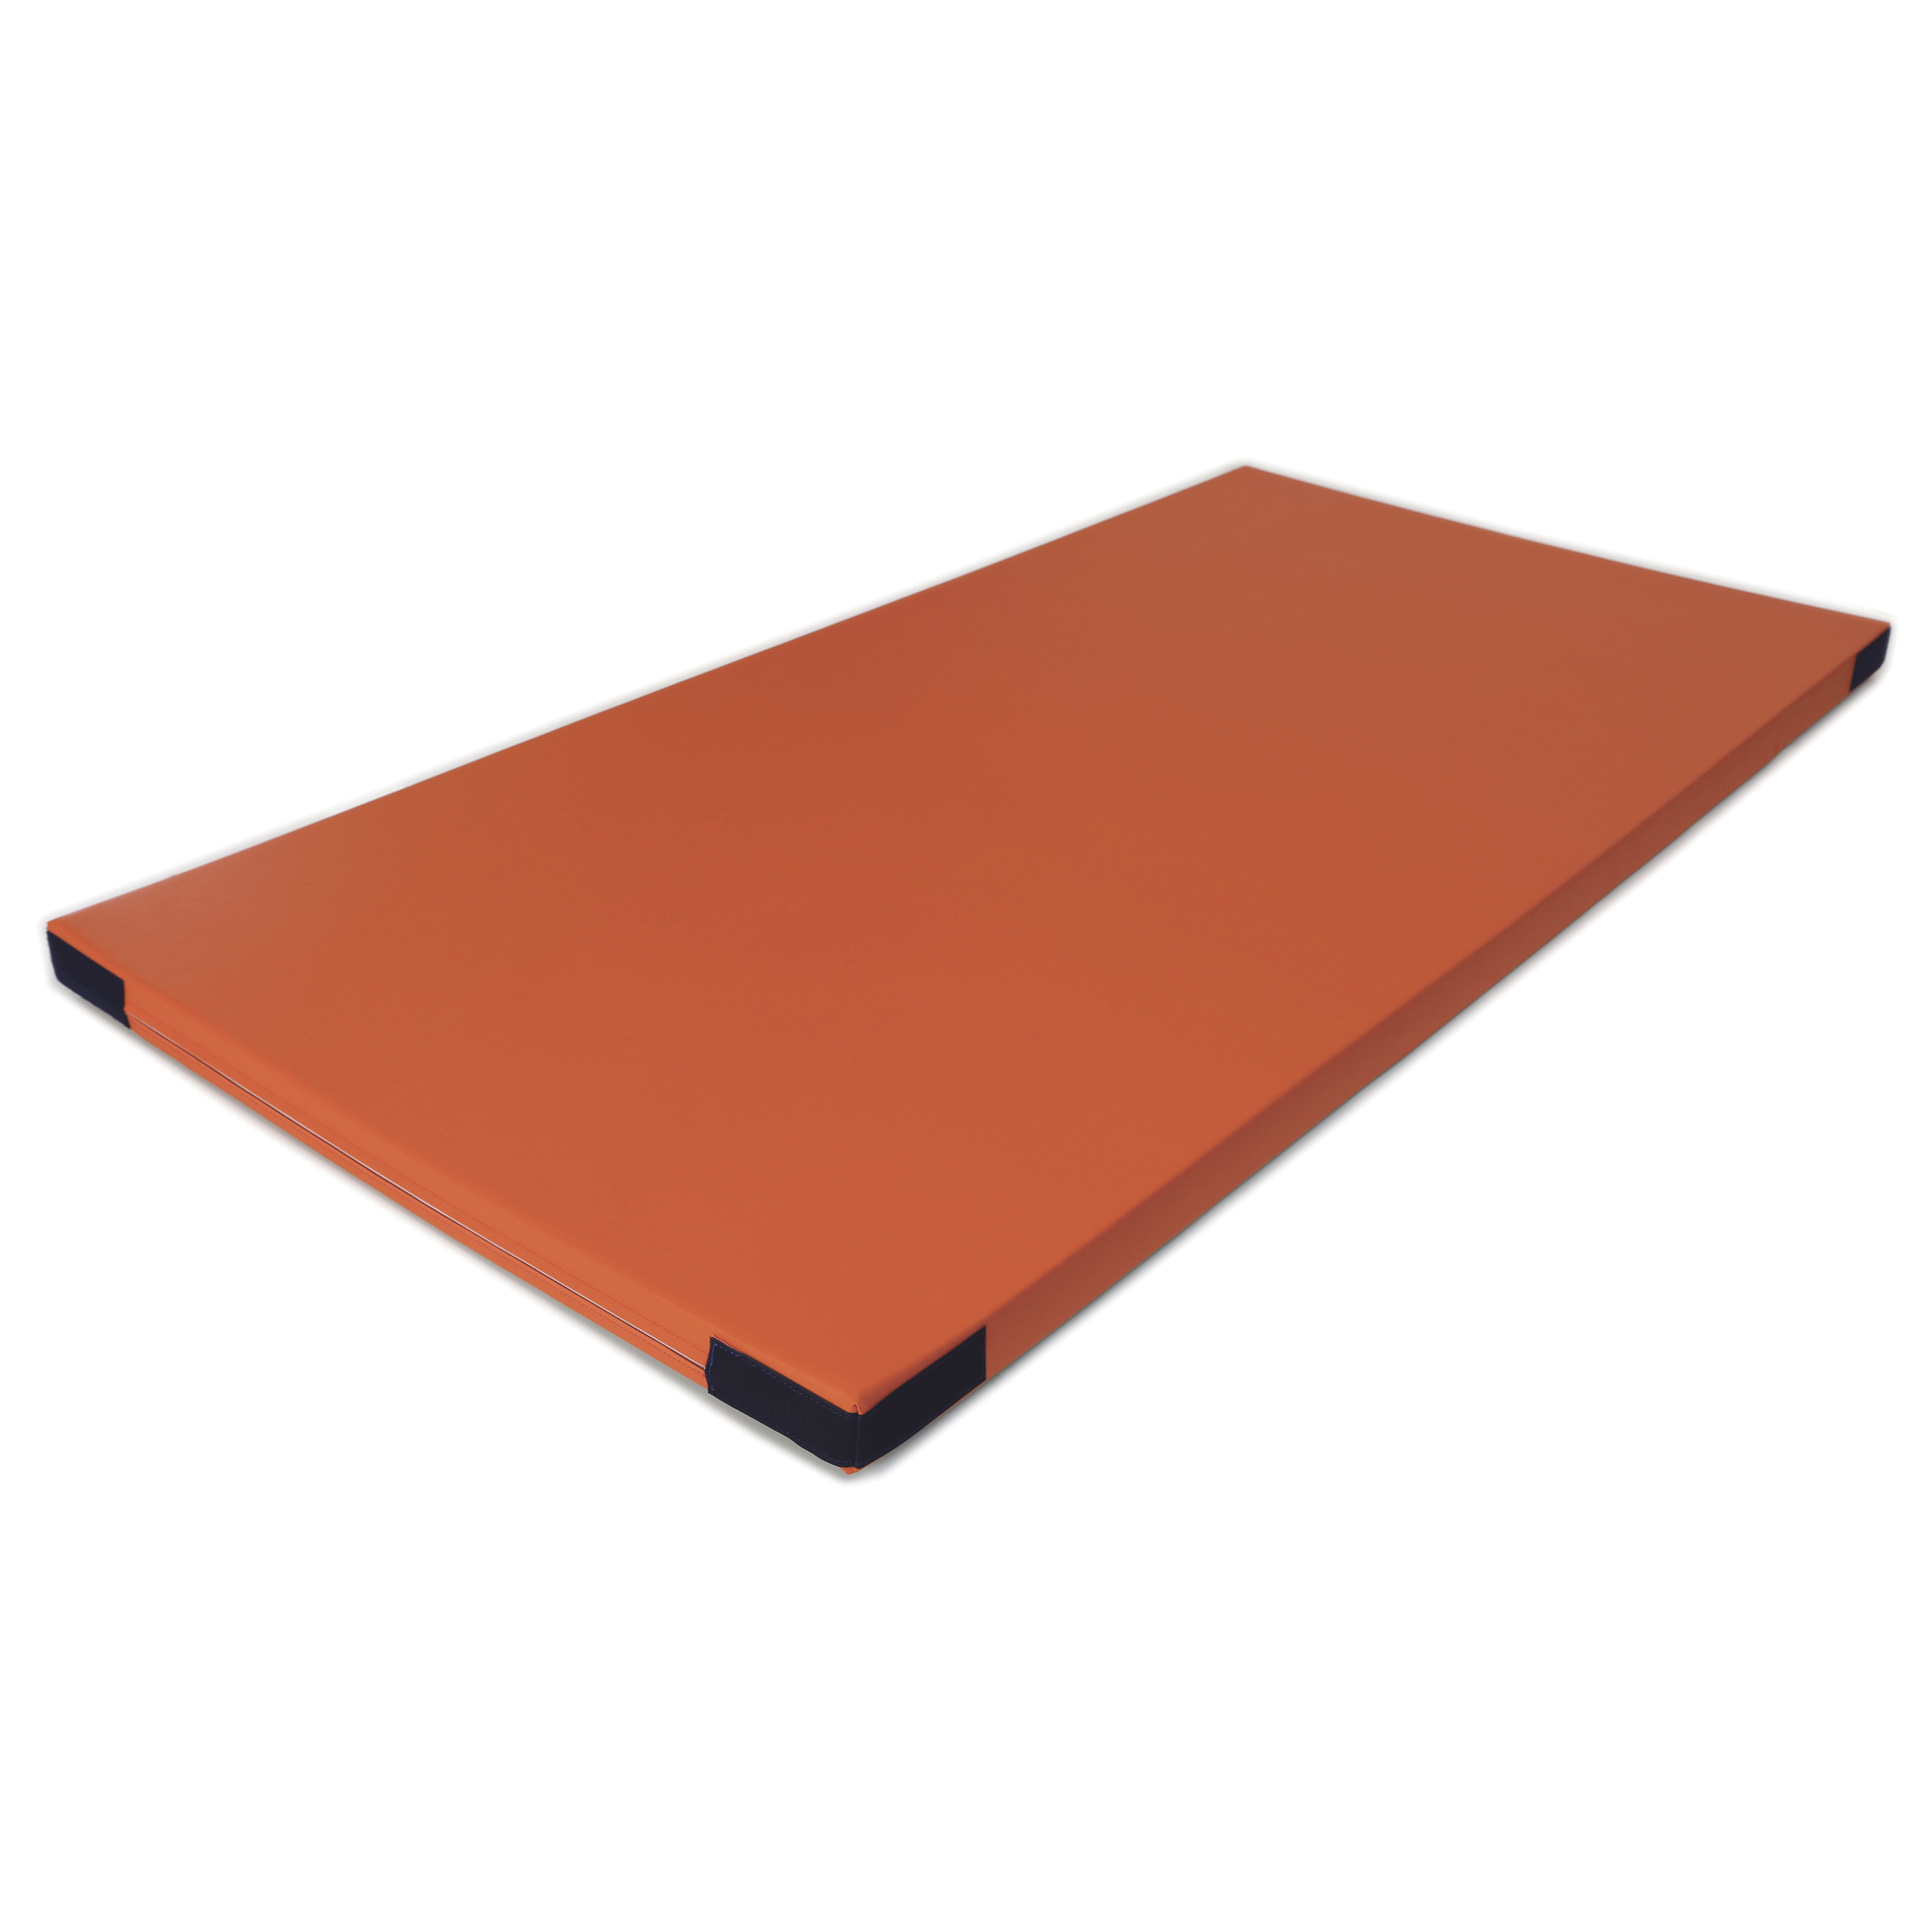 Fallschutzmatte Superleicht 'orange' Klett, 200 x 100 cm